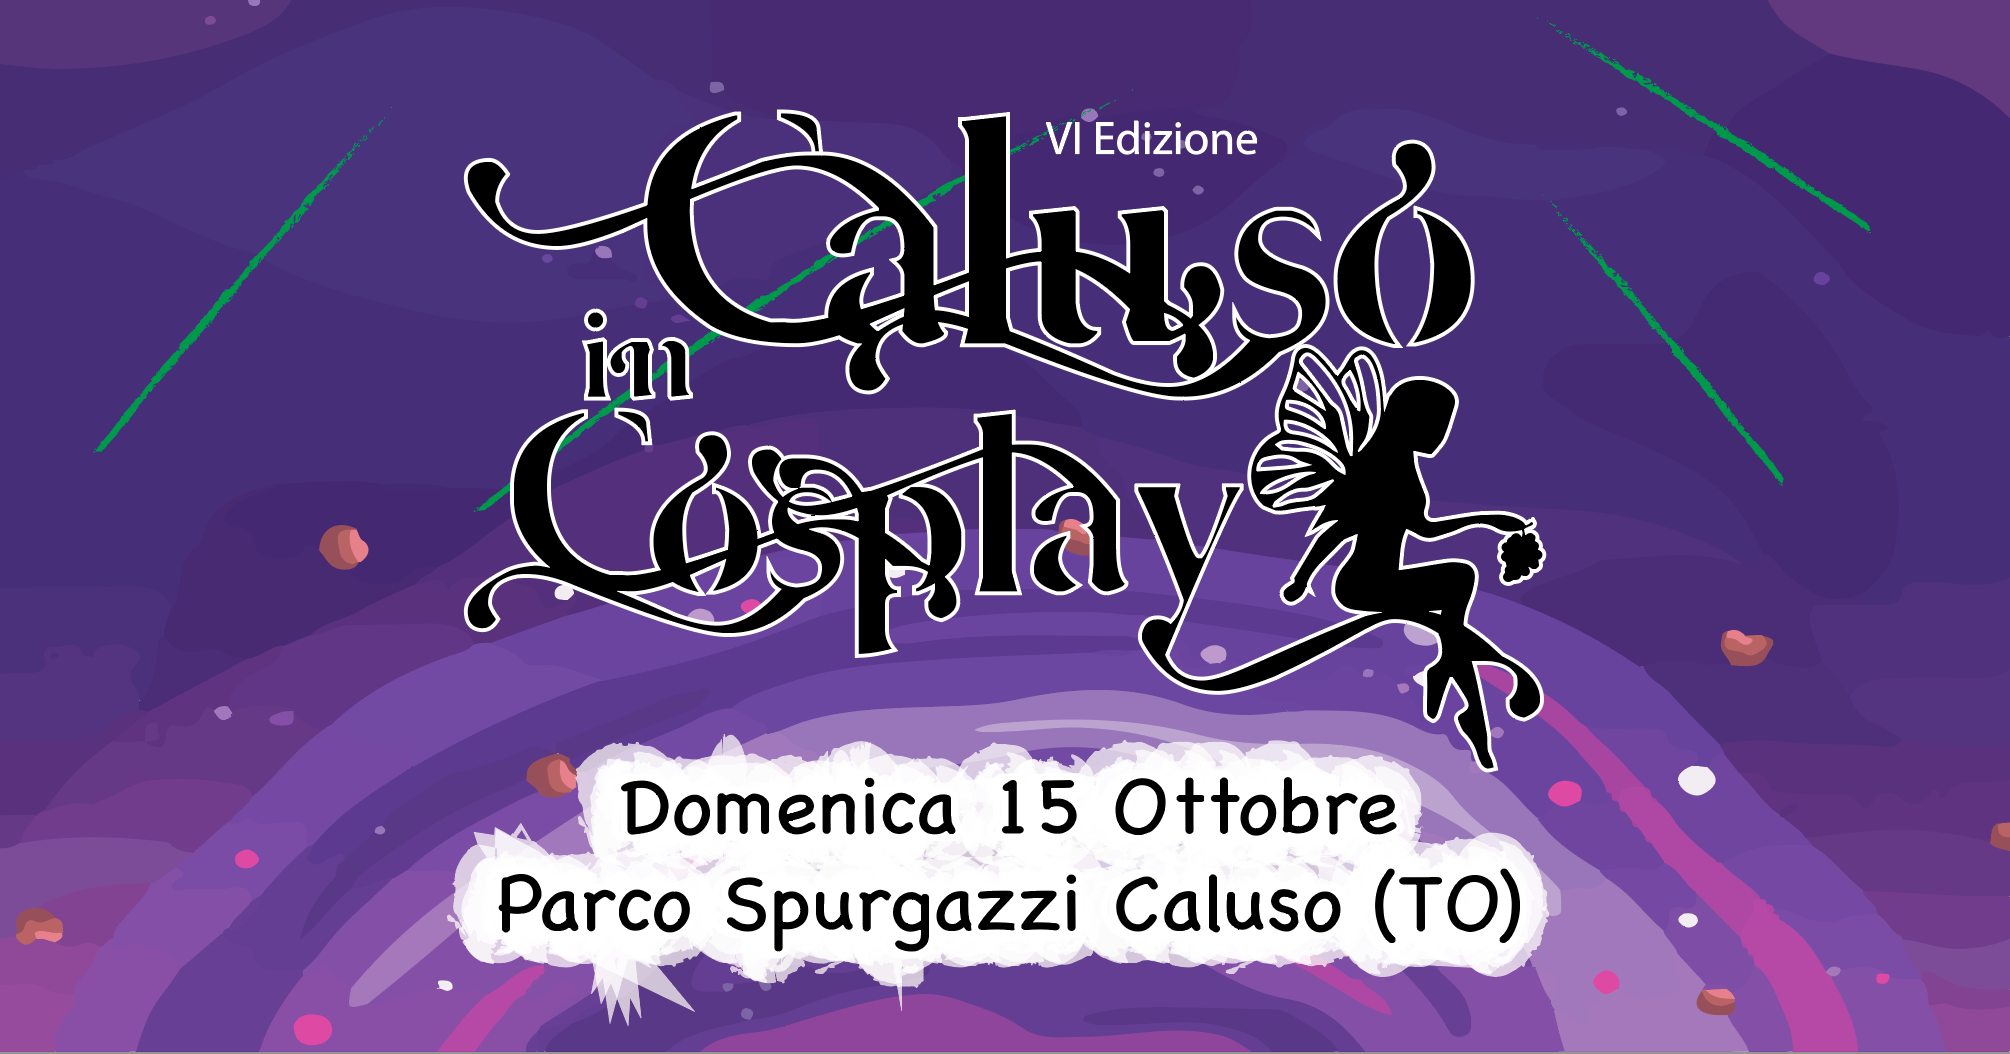 La sesta Edizione del Caluso in Cosplay: 15 ottobre 2023